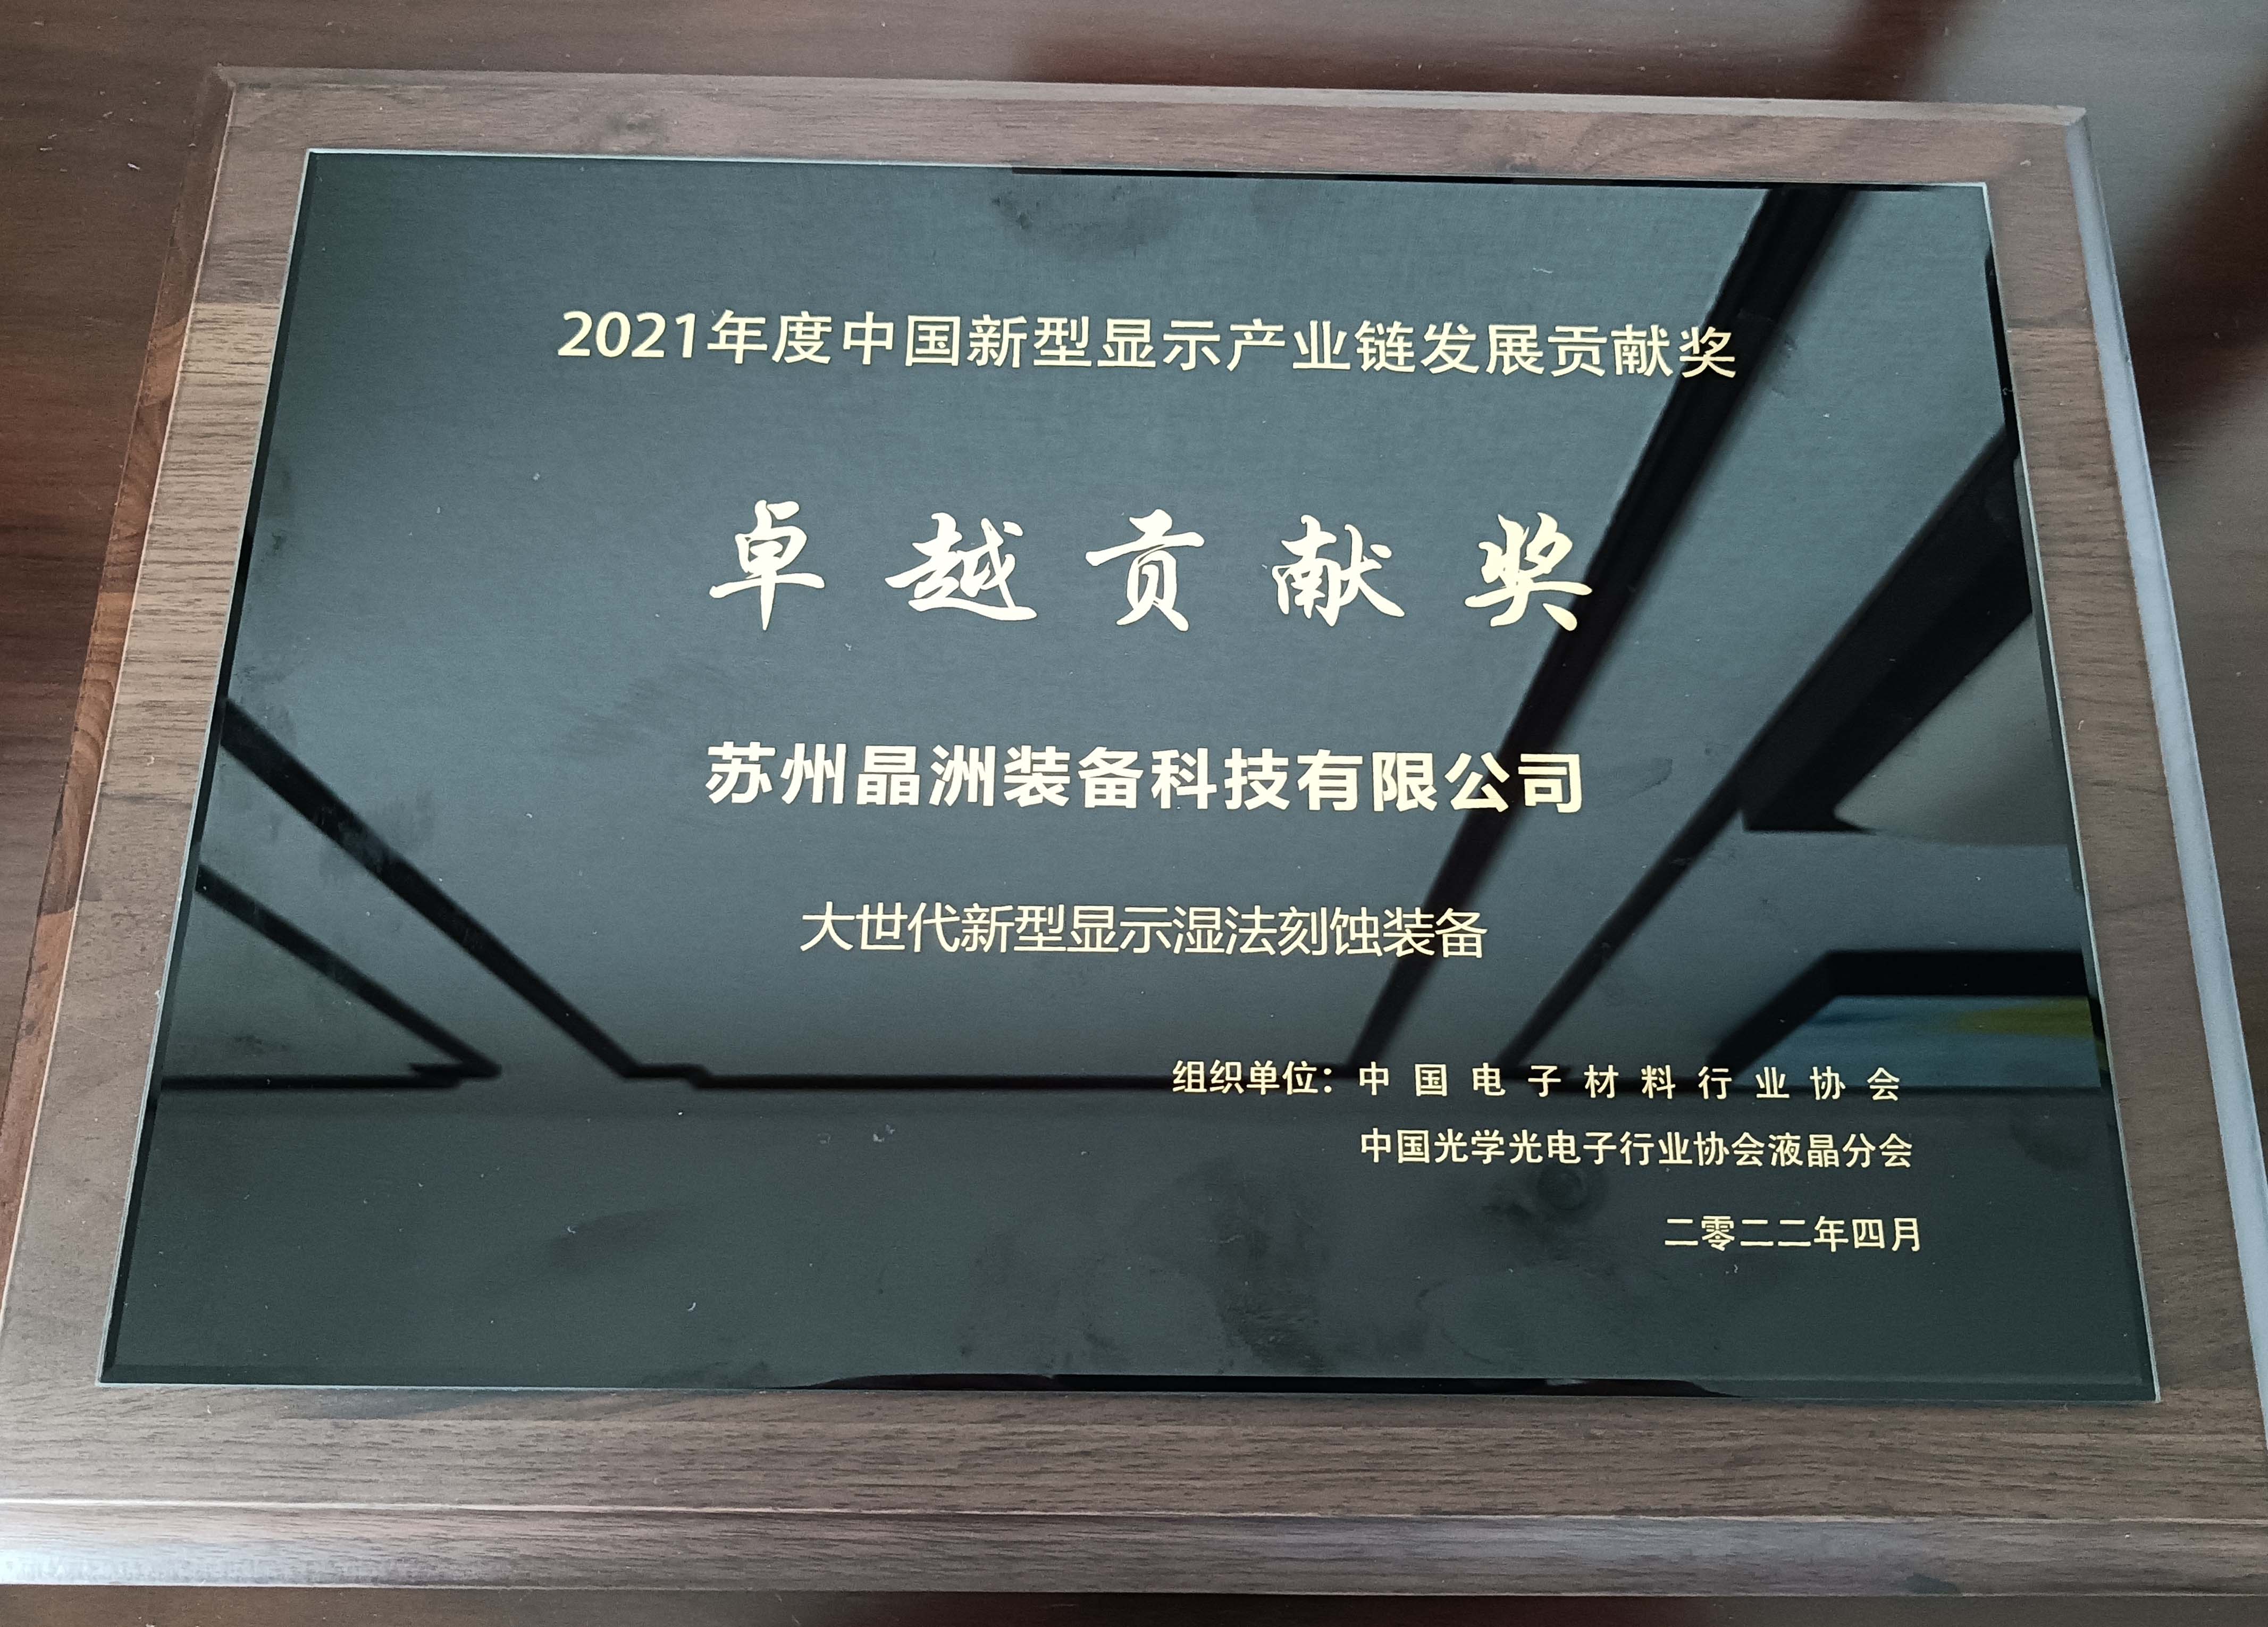 尊龙凯时装备荣获2021年度中国新型显示工业链卓越孝敬奖并宣布主题演讲